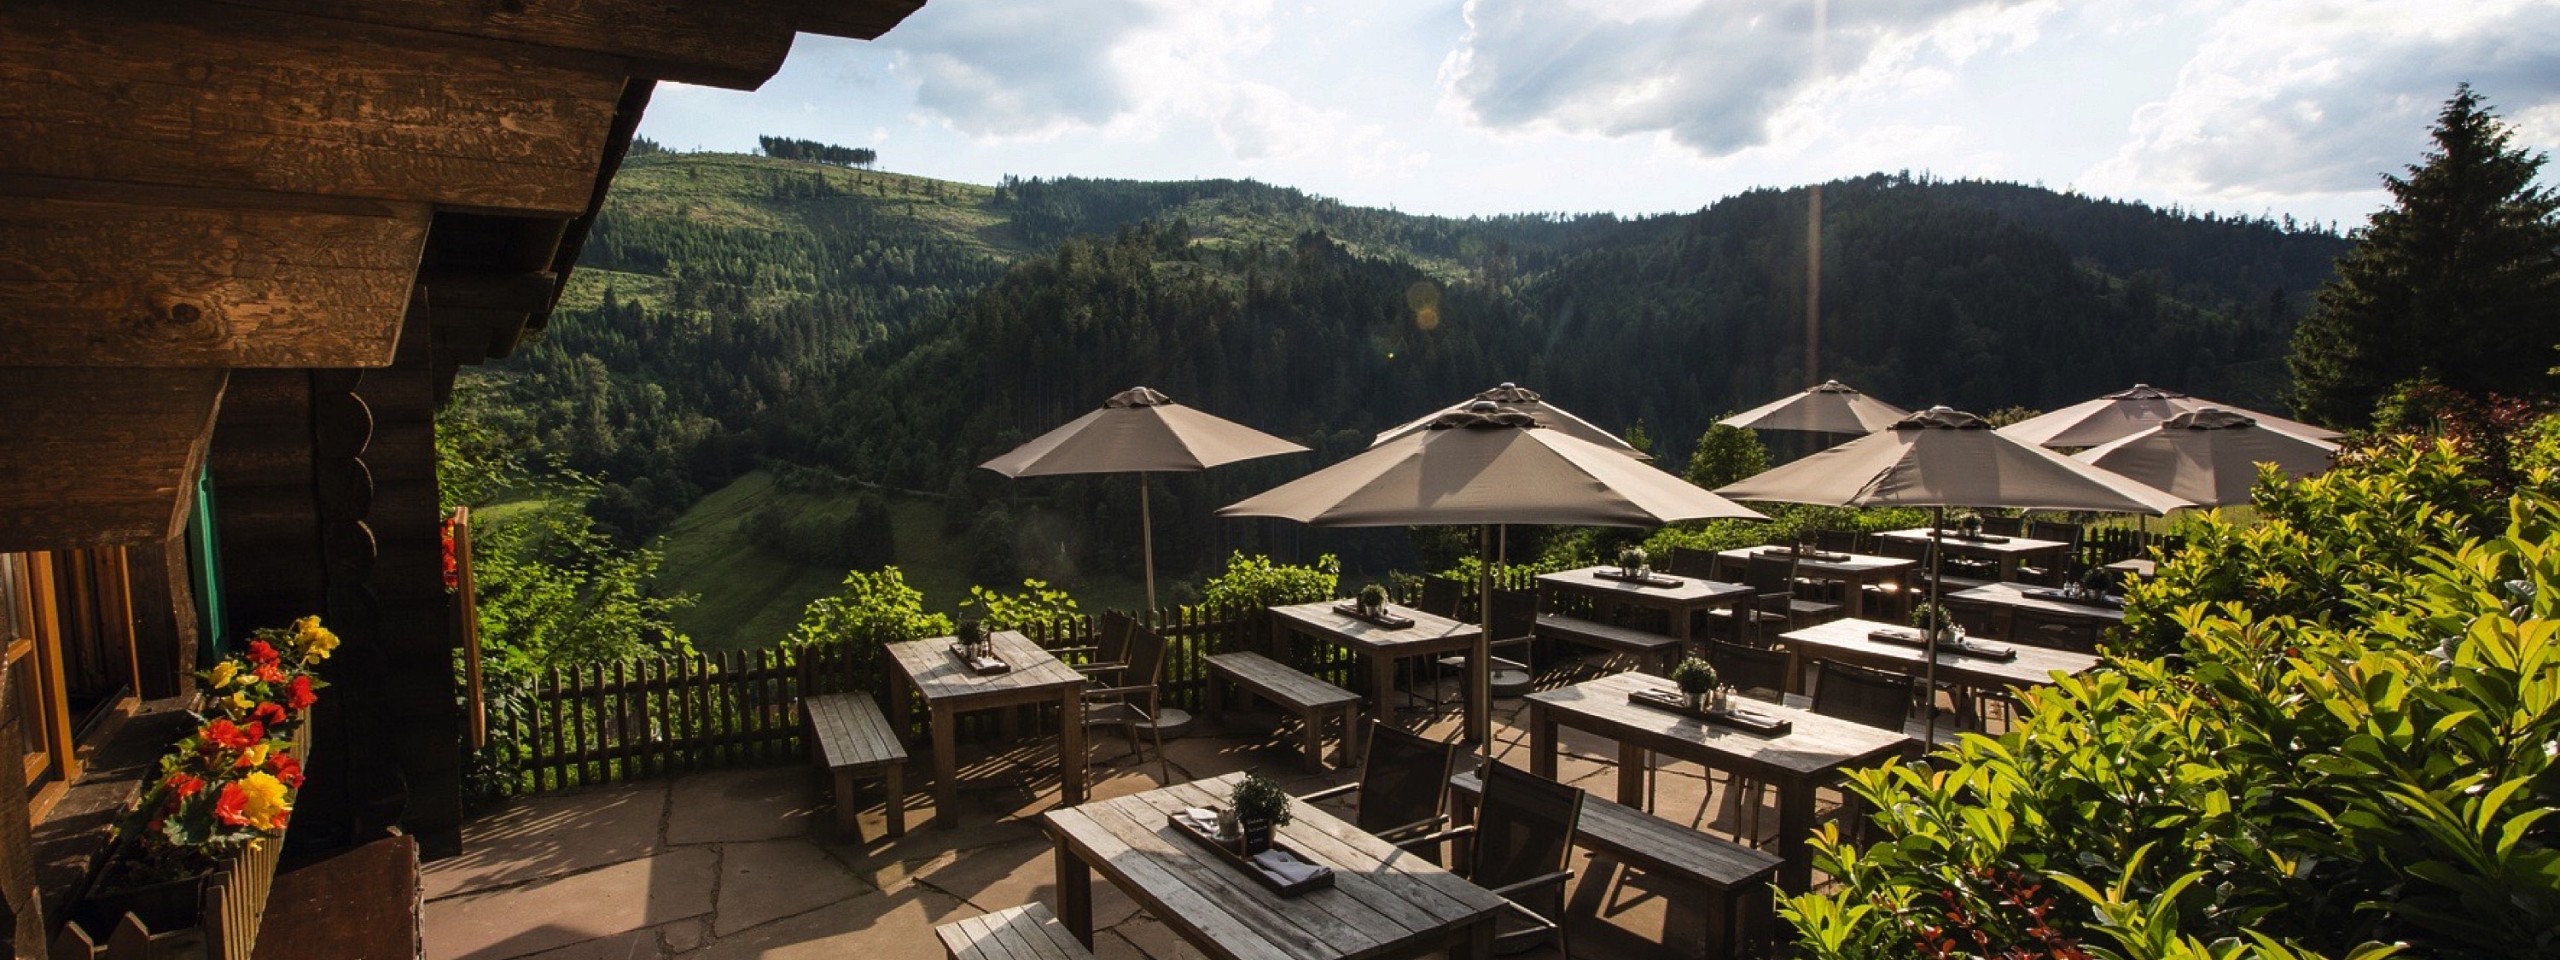 Terrasse der Blockhütte mit Sonnenschirmen im Hotel mit Arrangements im Schwarzwald.